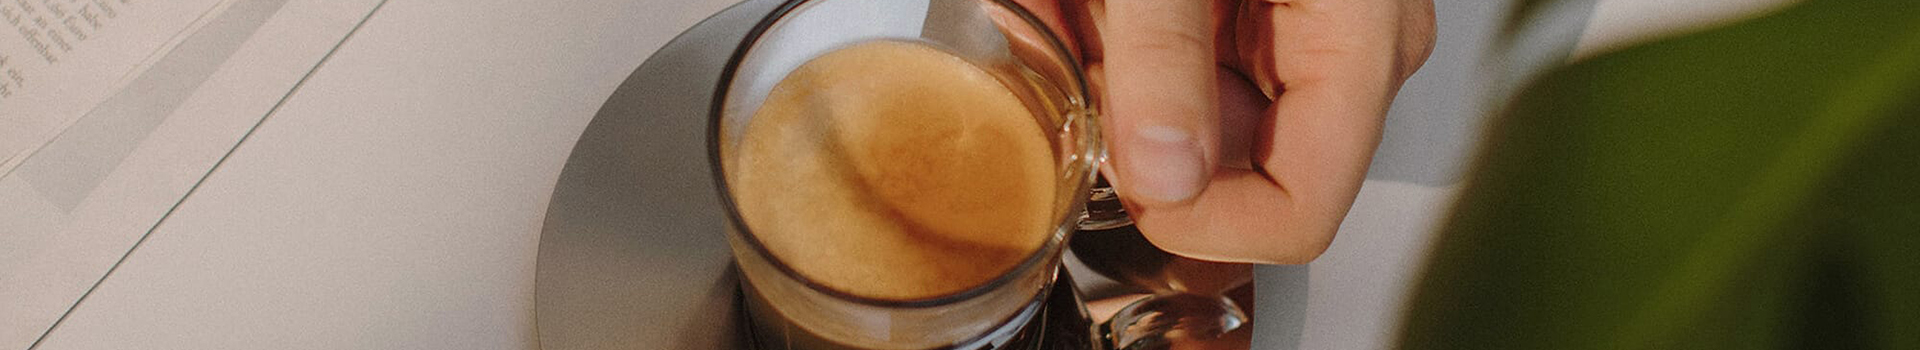 Nespresso - ¿Sabías que el Aeroccino puede crear espuma de leche tanto  caliente como fría? ¡Probá la opción fría para preparar tu propio  #IcedCoffee! Te compartimos algunos tips para su uso: 1